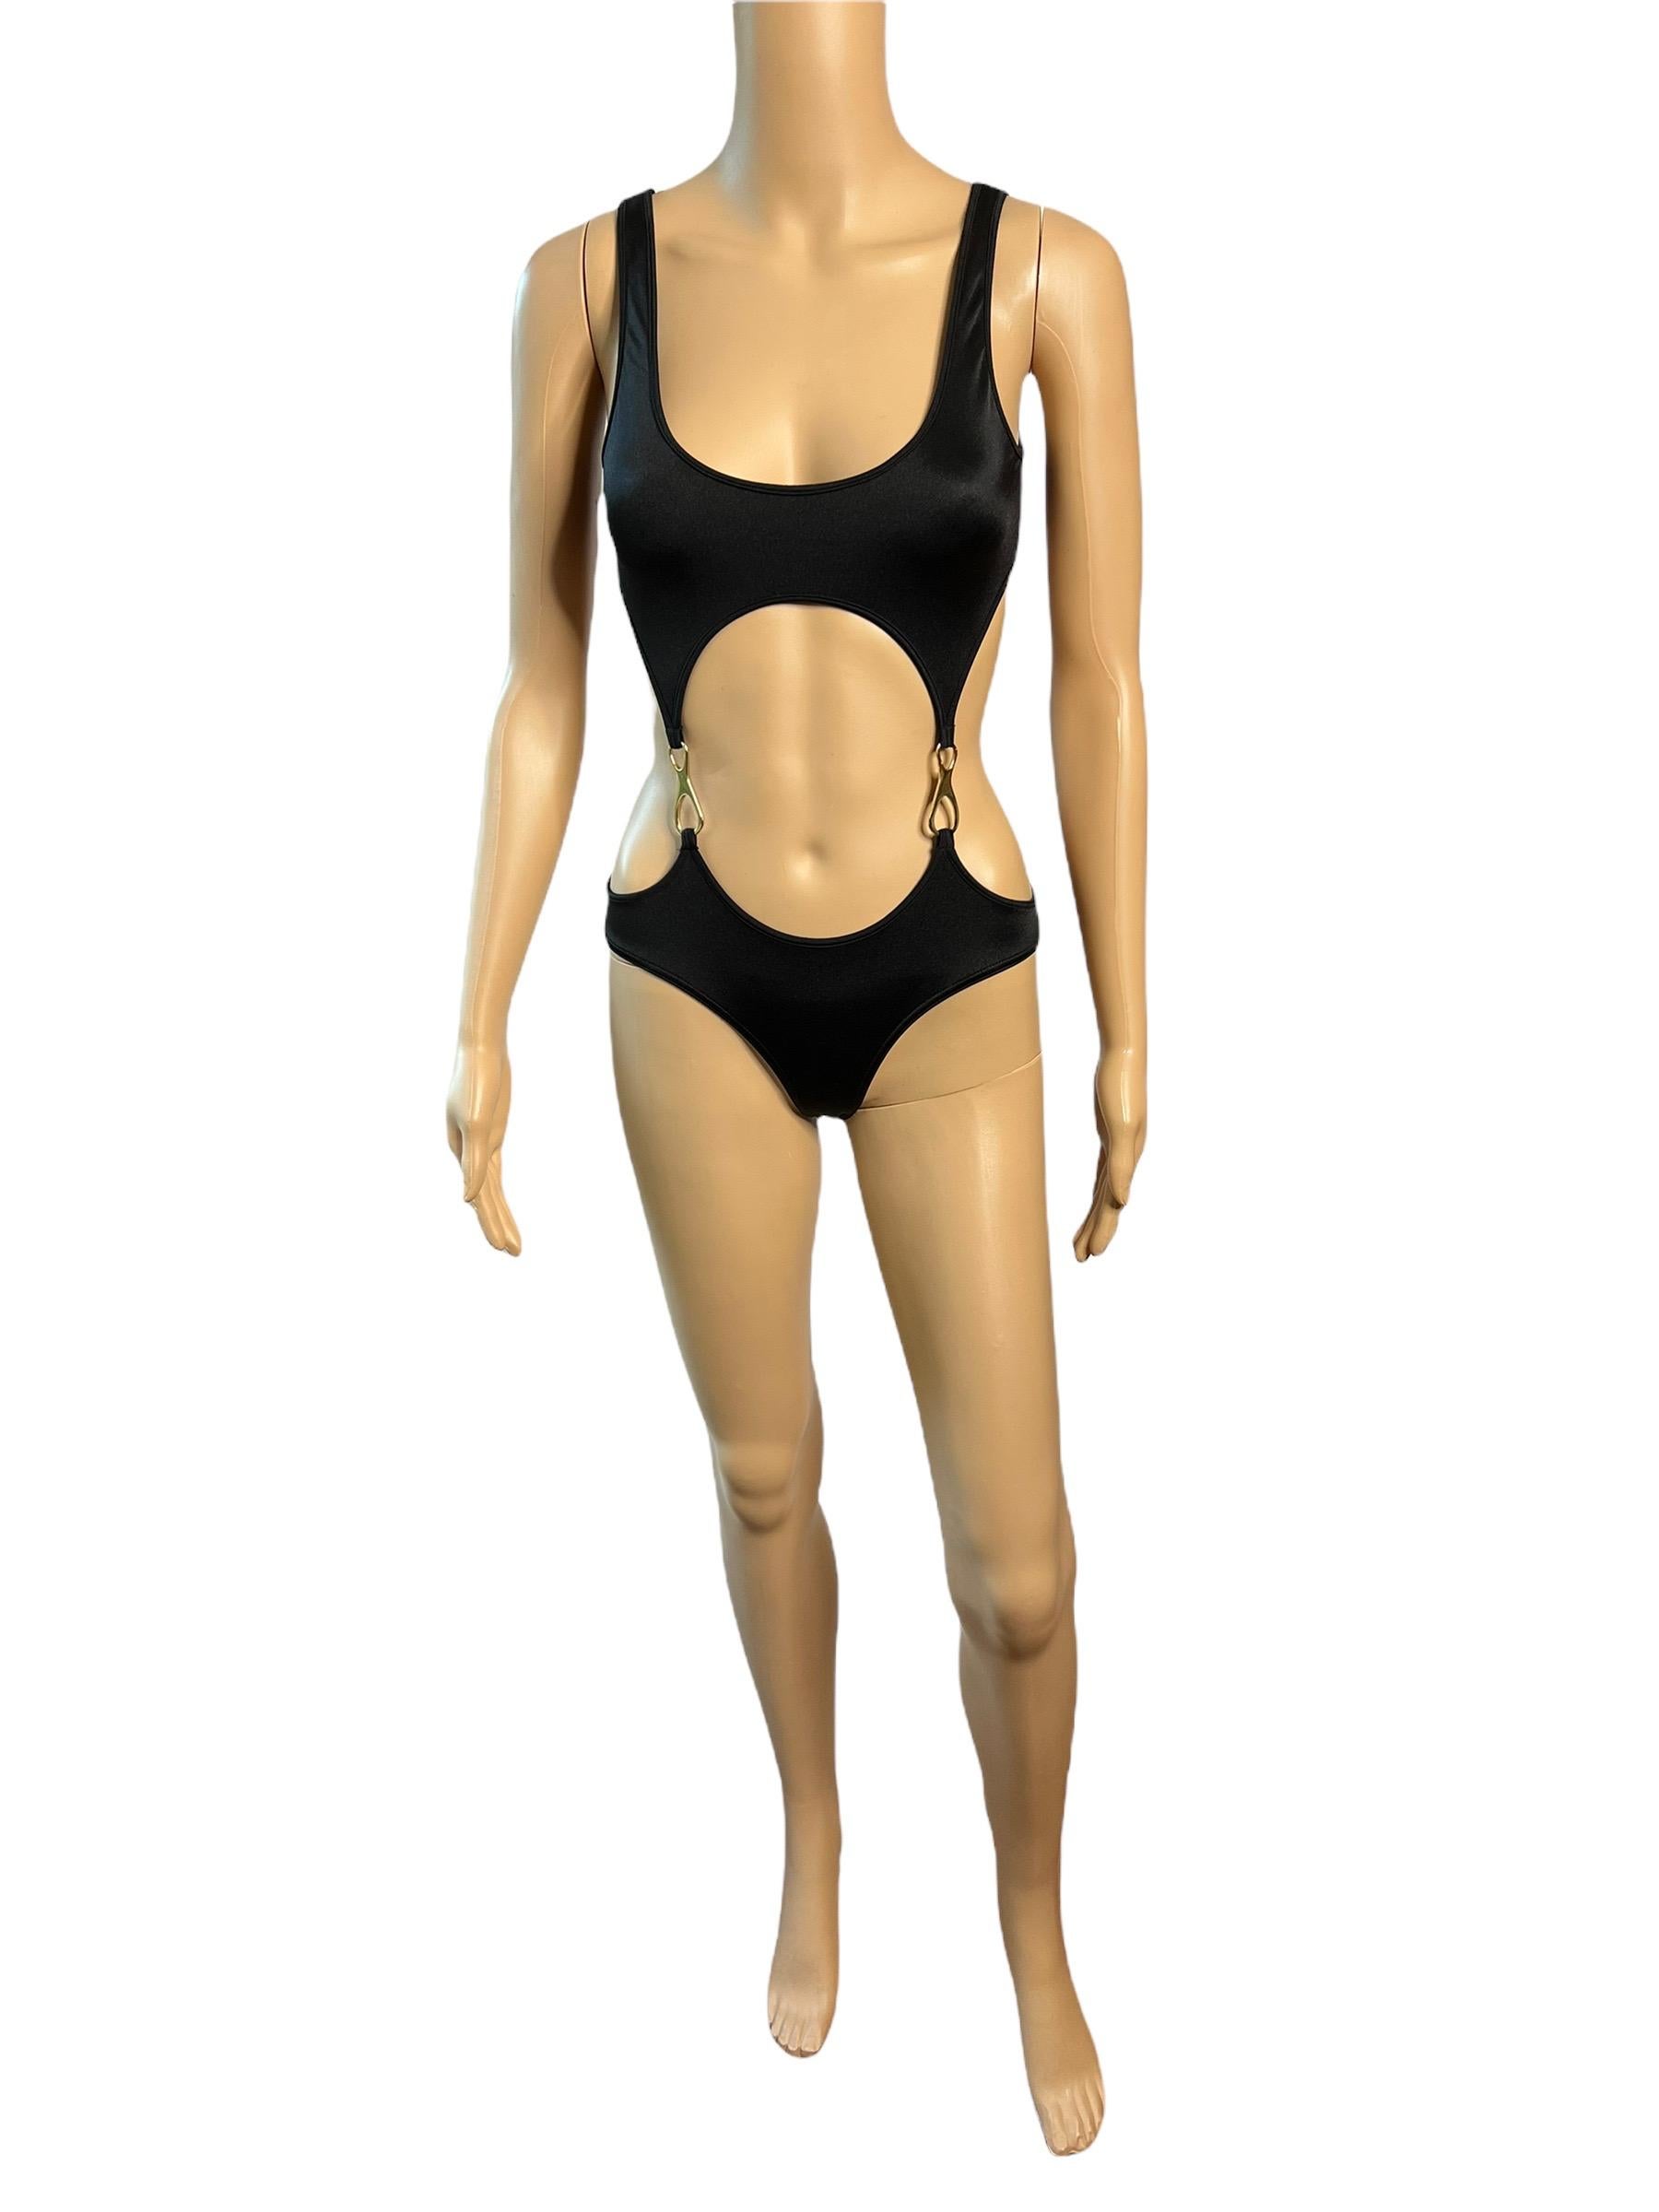 Tom Ford für Gucci S/S 1998 Ausschnitt Goldschnallen Einteiliger Bodysuit Badeanzug Bademode Größe M


